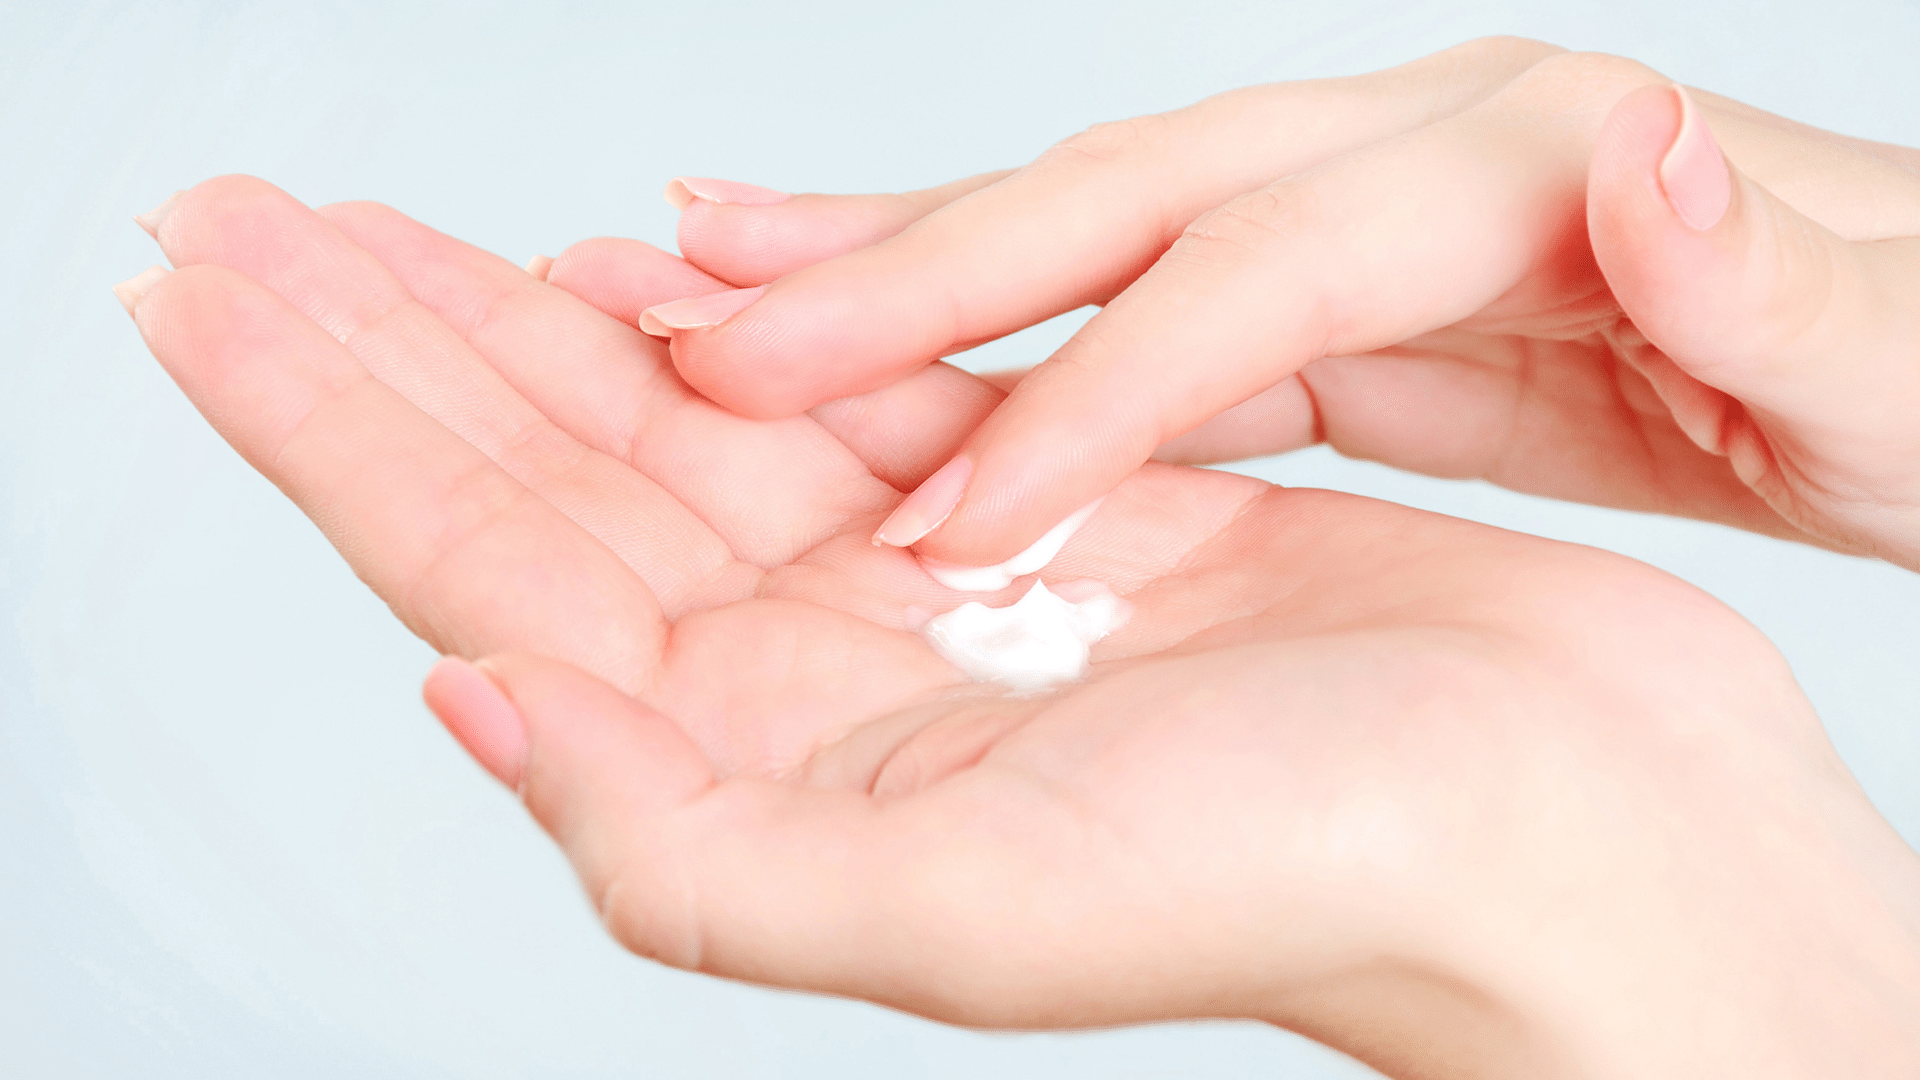 L'effetto idratante di una nuova crema a base di ialuronato di sodio ad alto peso molecolare in pazienti psoriasici in fototerapia